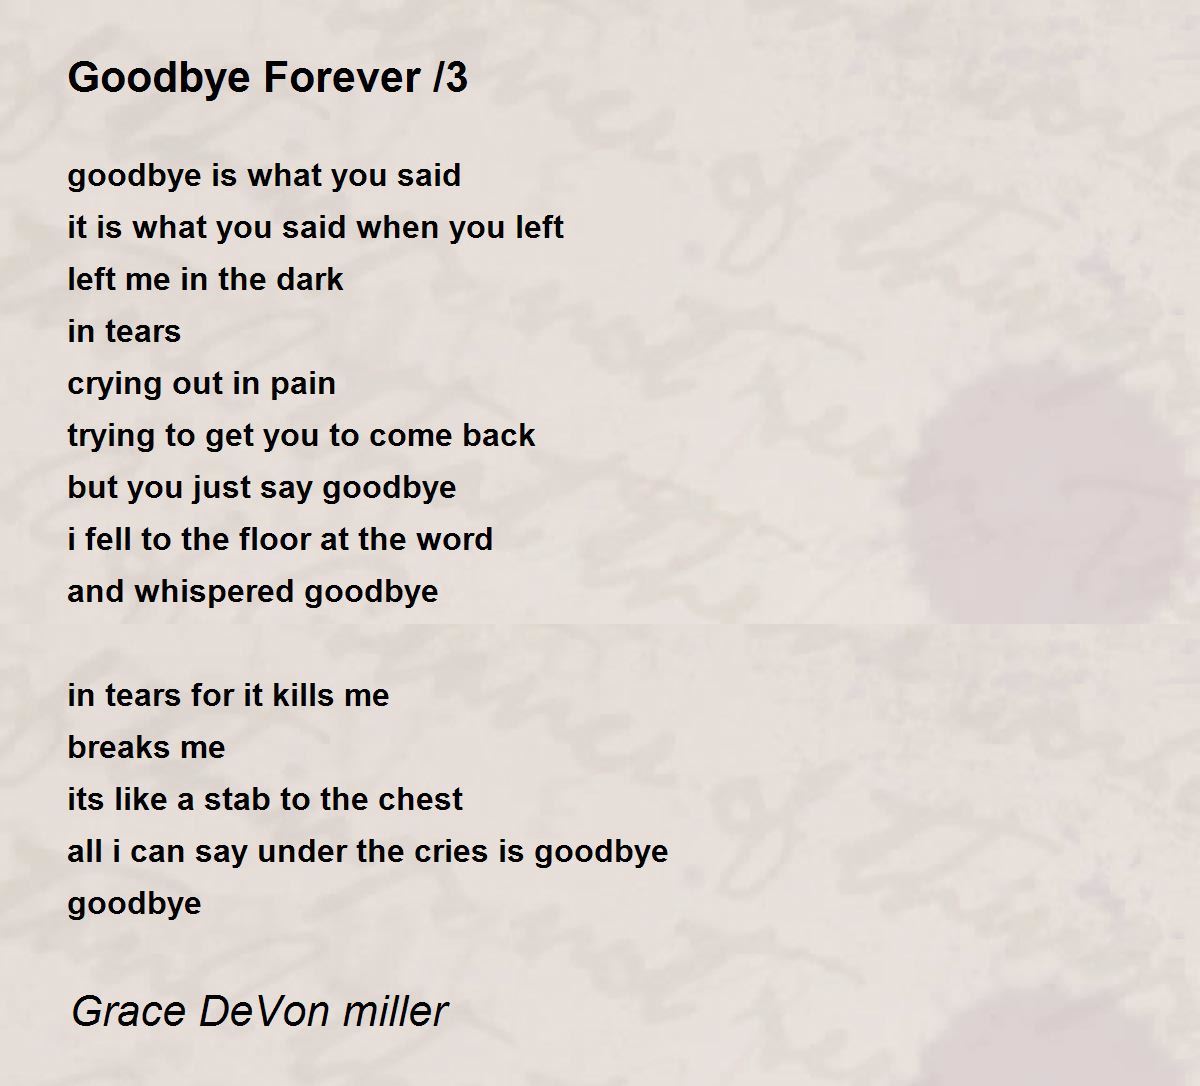 Goodbye Forever /3 - Goodbye Forever /3 Poem by Grace DeVon miller